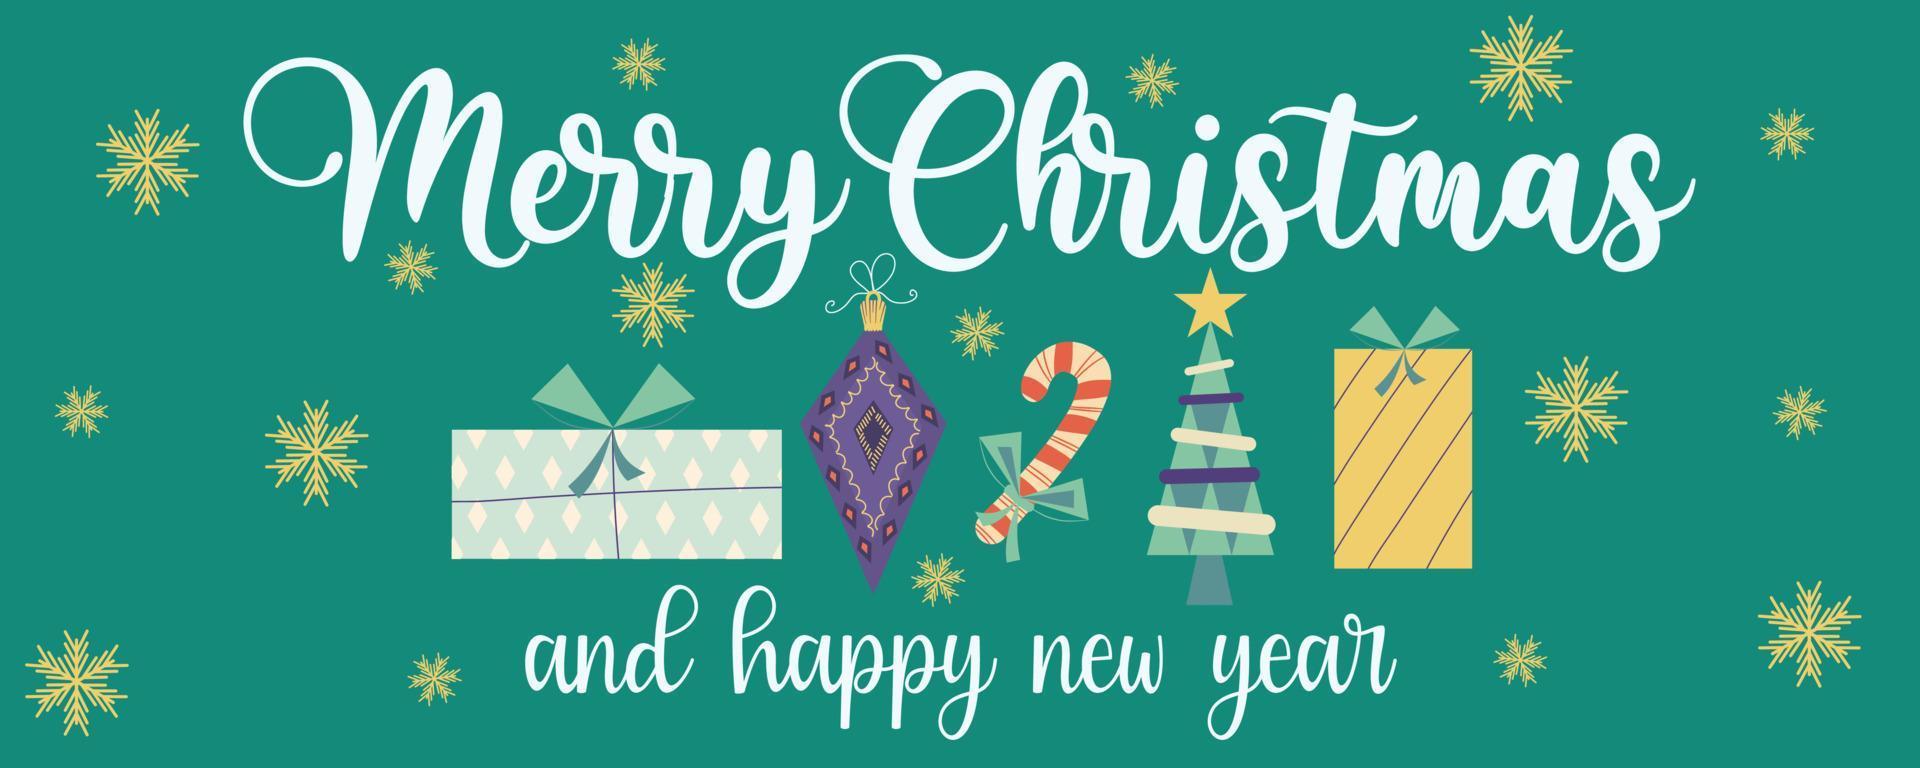 kerst achtergrond retro banner met tekst vrolijk kerstfeest en geschenken, toys.cover met geschenken, speelgoed en een boom. feestelijke felicitaties. vector illustratie